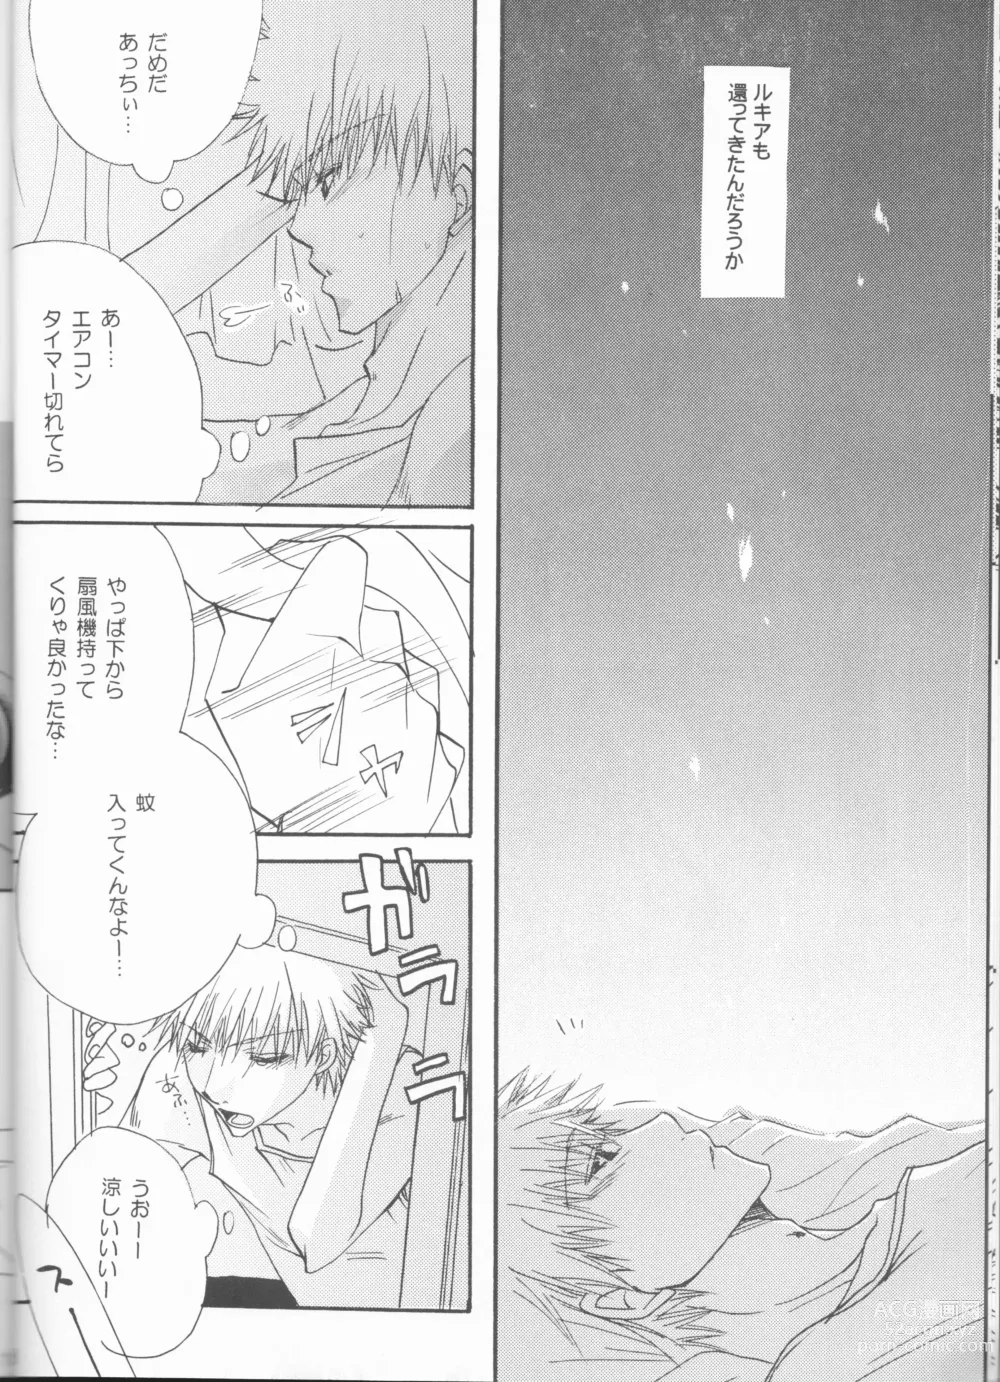 Page 18 of doujinshi Kimi o suki ni natte hajimete no natsu ga kuru.